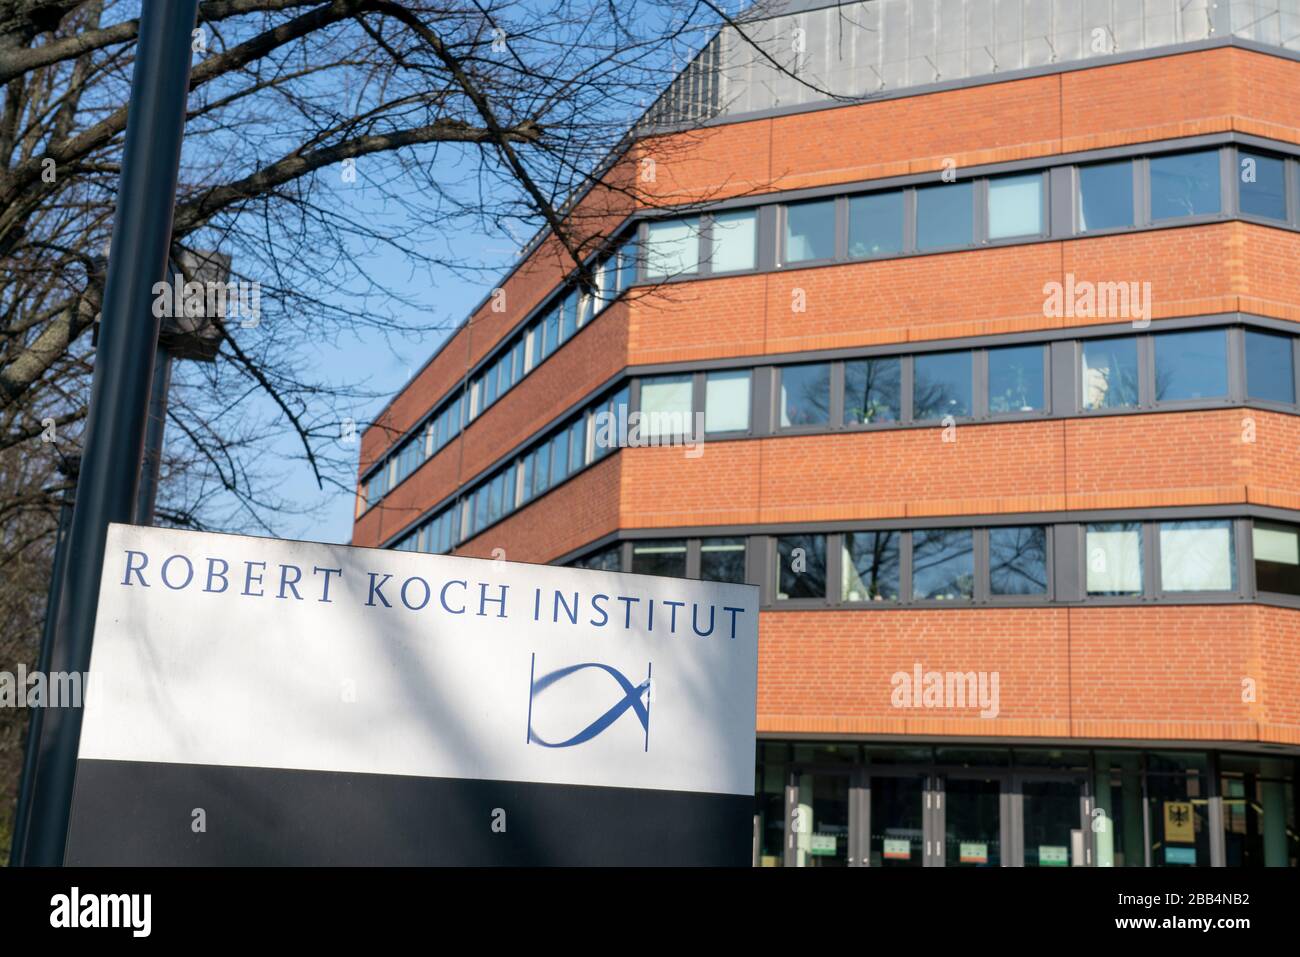 Robert Koch Institut Seestrasse Berlin . Deutsche Bundesoberbehörde für Infektionskrankheiten und nicht übertragbare Krankheiten Stock Photo